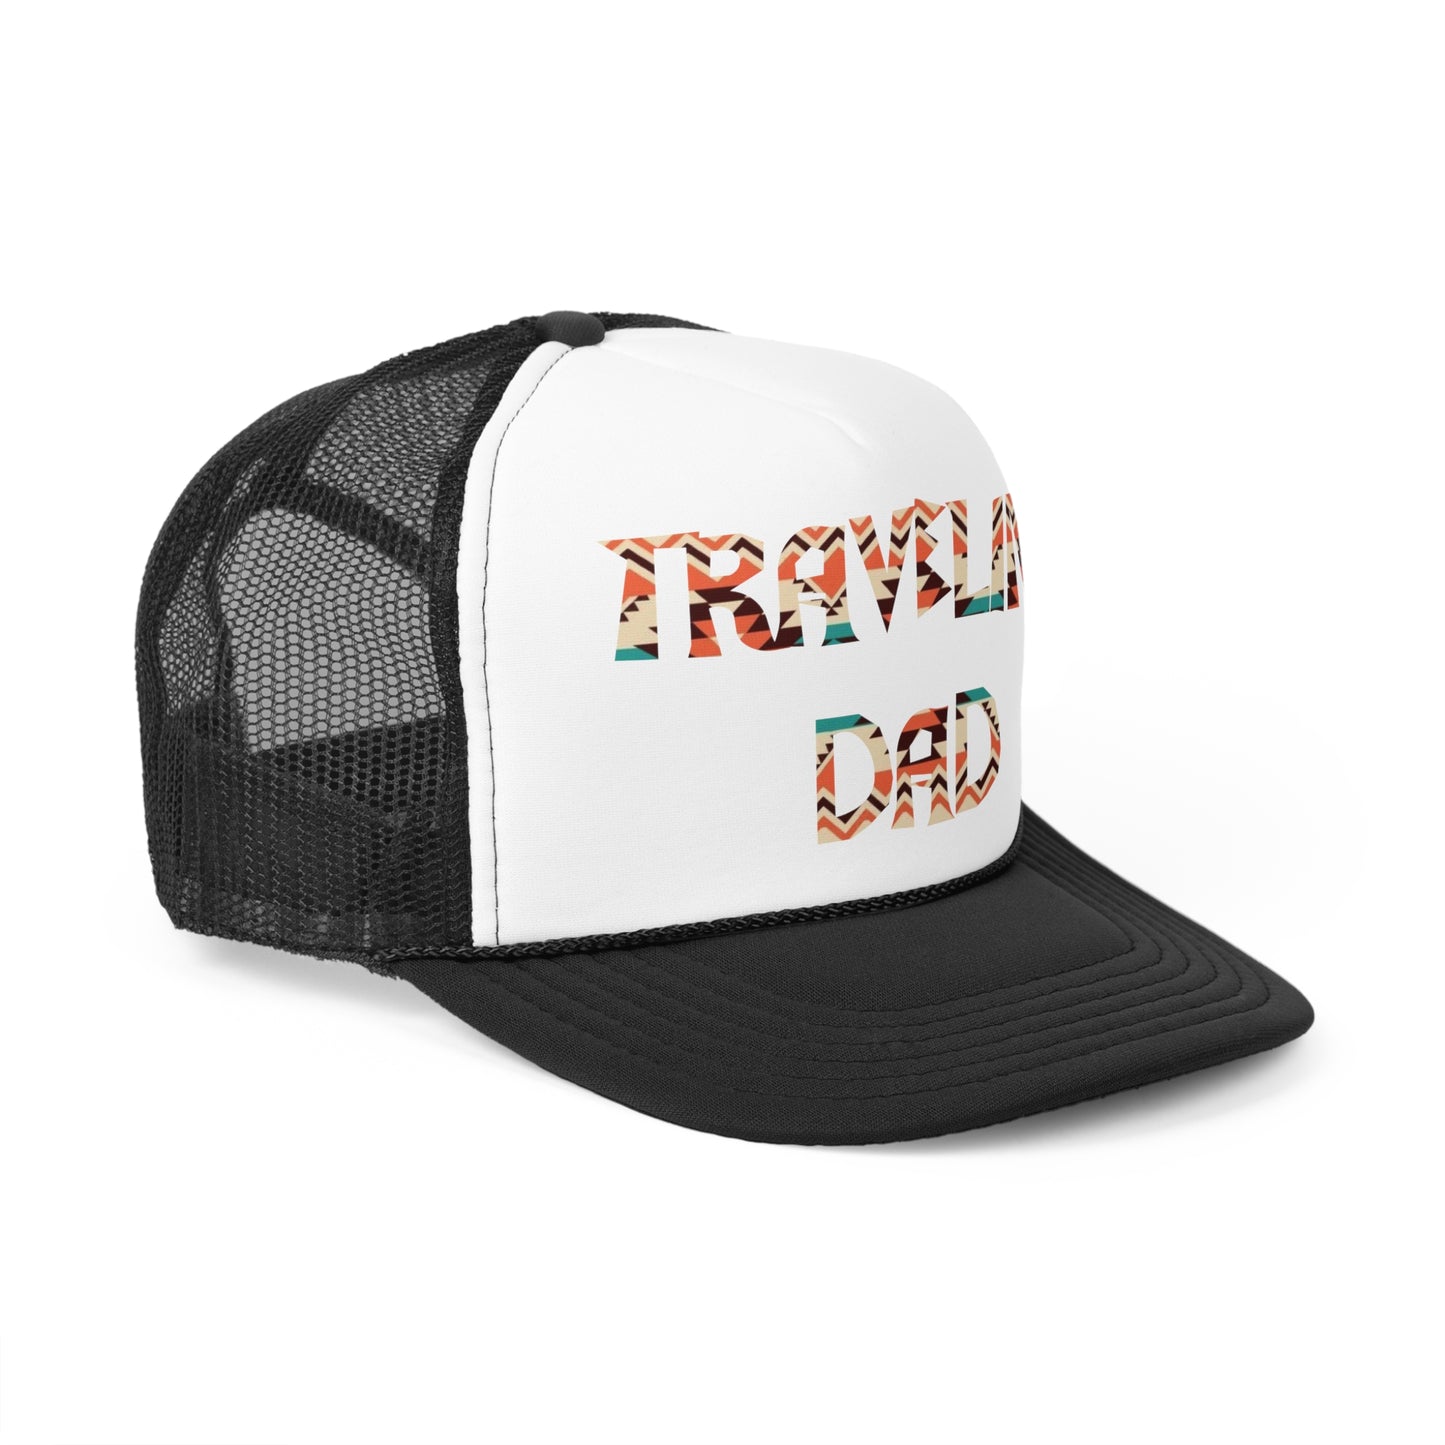 Gorra de papá, gorra de padre viajero, dia del padre, regalo dia del padre, gorra de viaje, regalo papá viajero